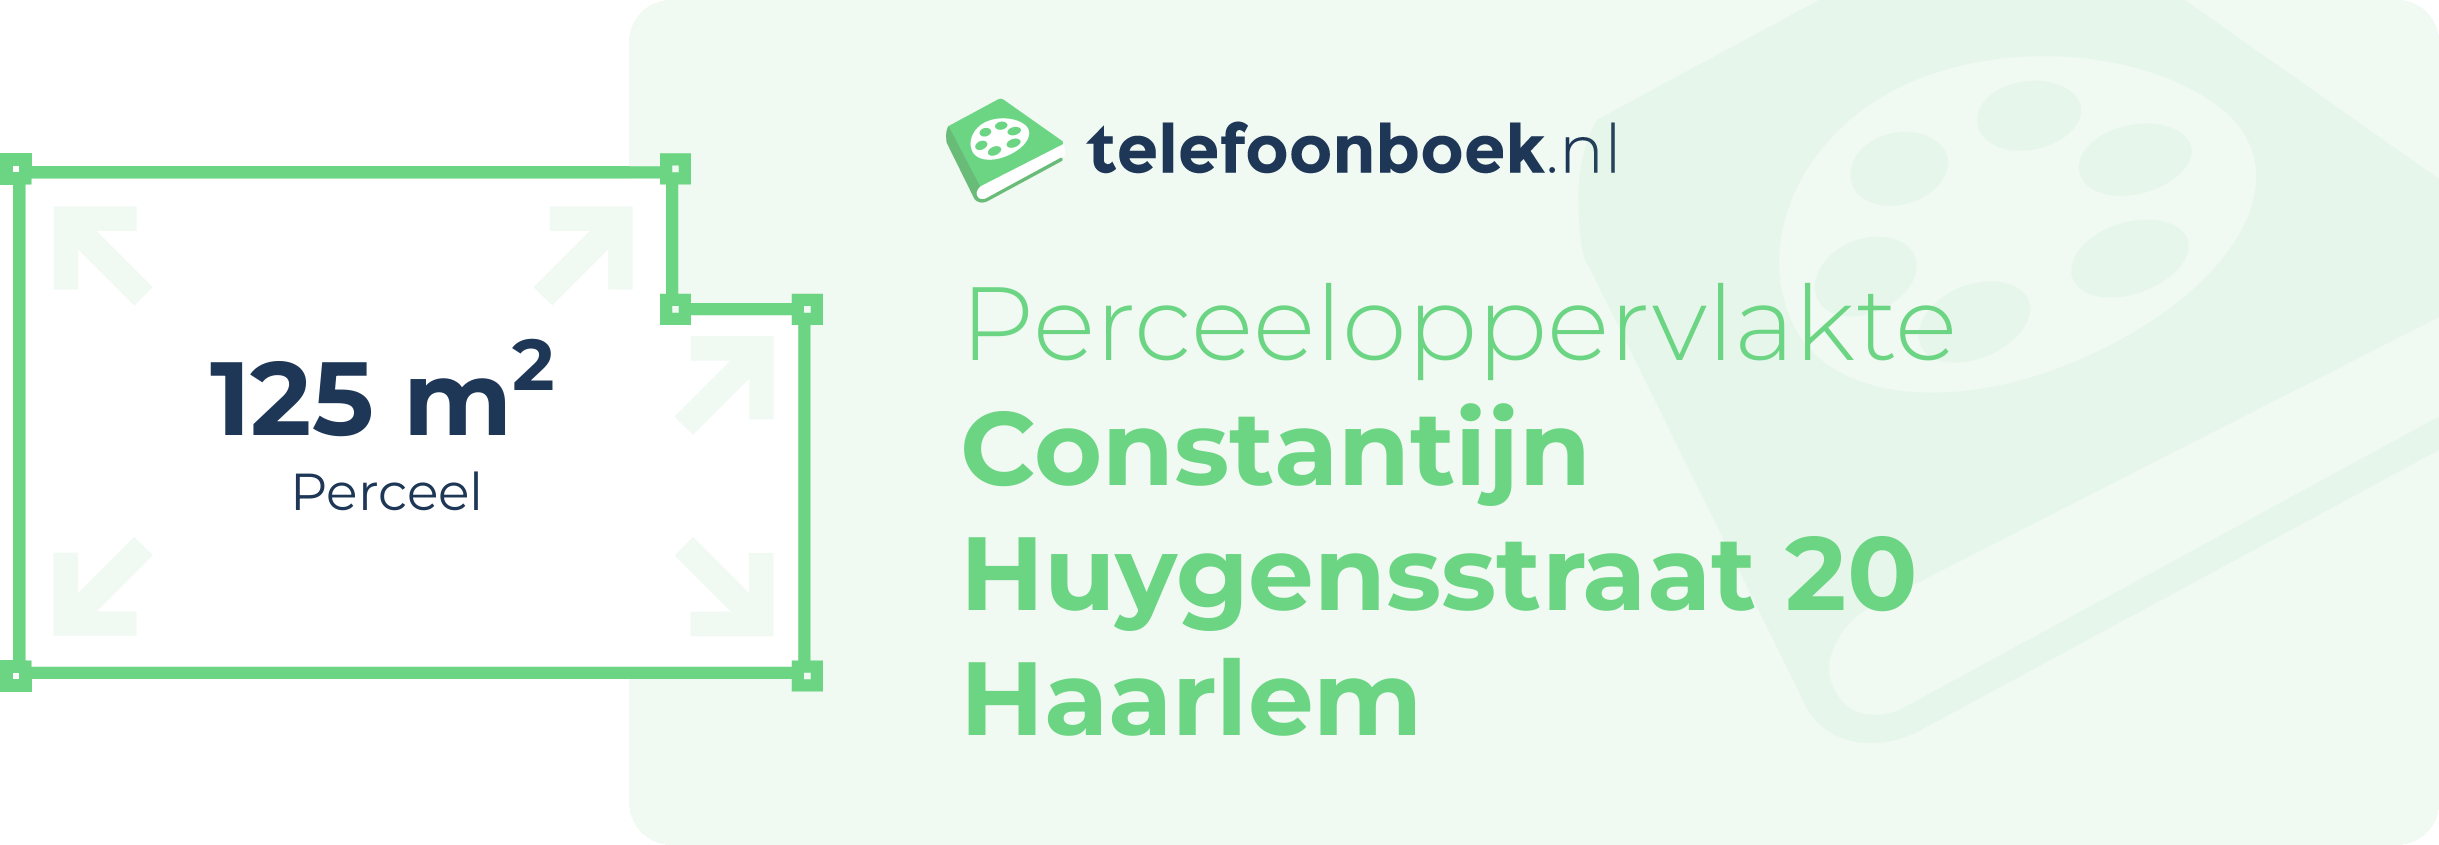 Perceeloppervlakte Constantijn Huygensstraat 20 Haarlem